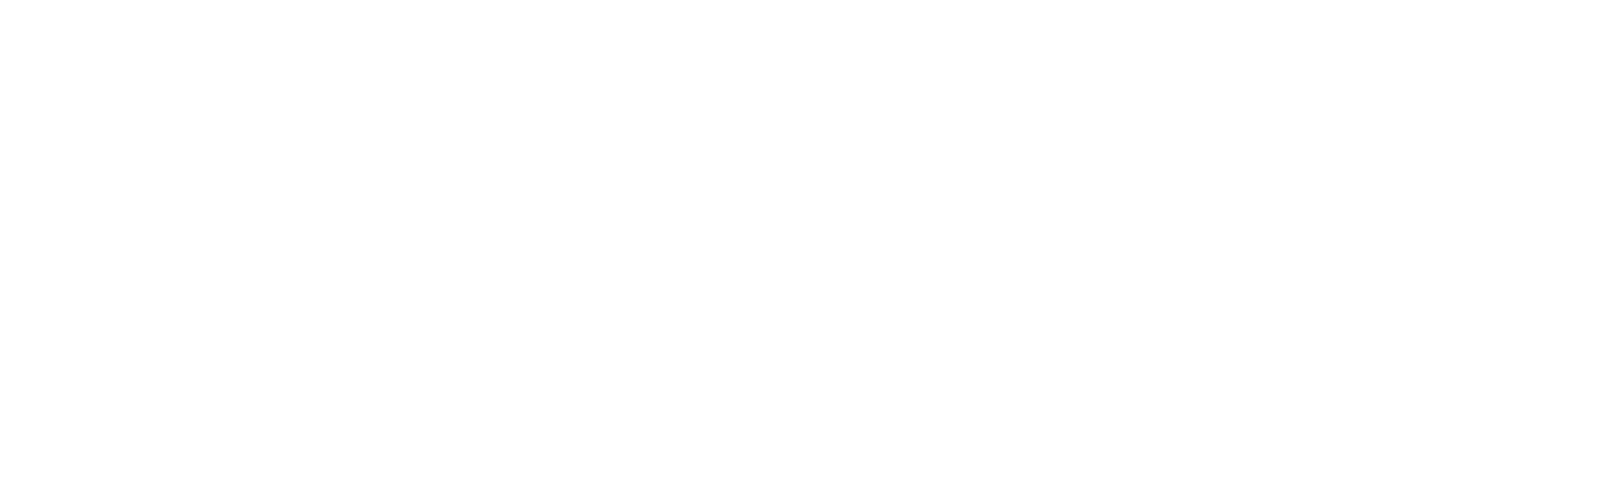 Trihasco Utama